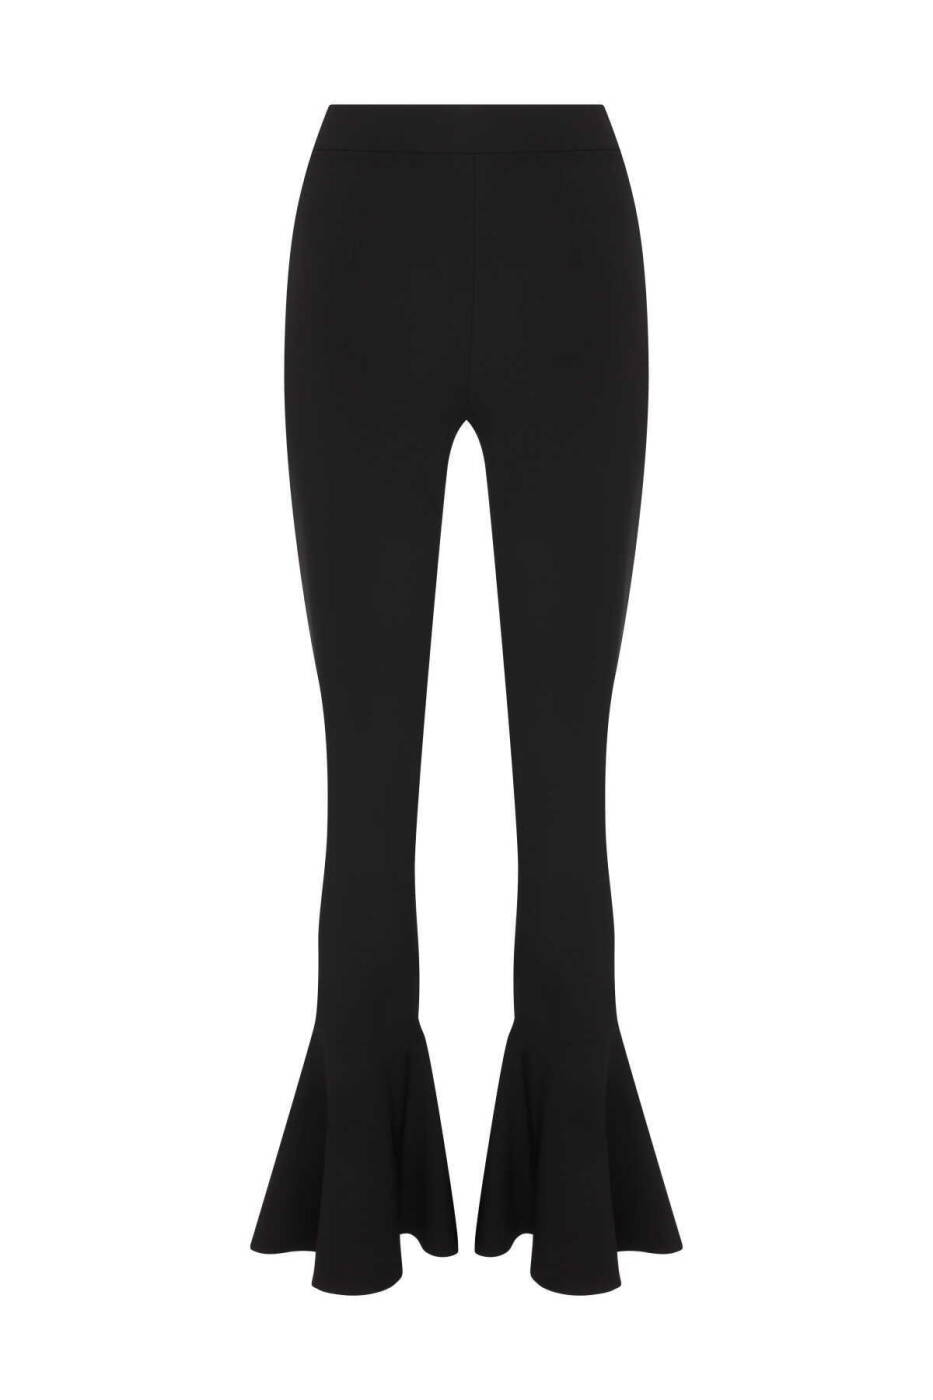  Düşük Bel Volanlı Paça Detaylı Likralı Krep Kadın Pantolon Siyah - 2